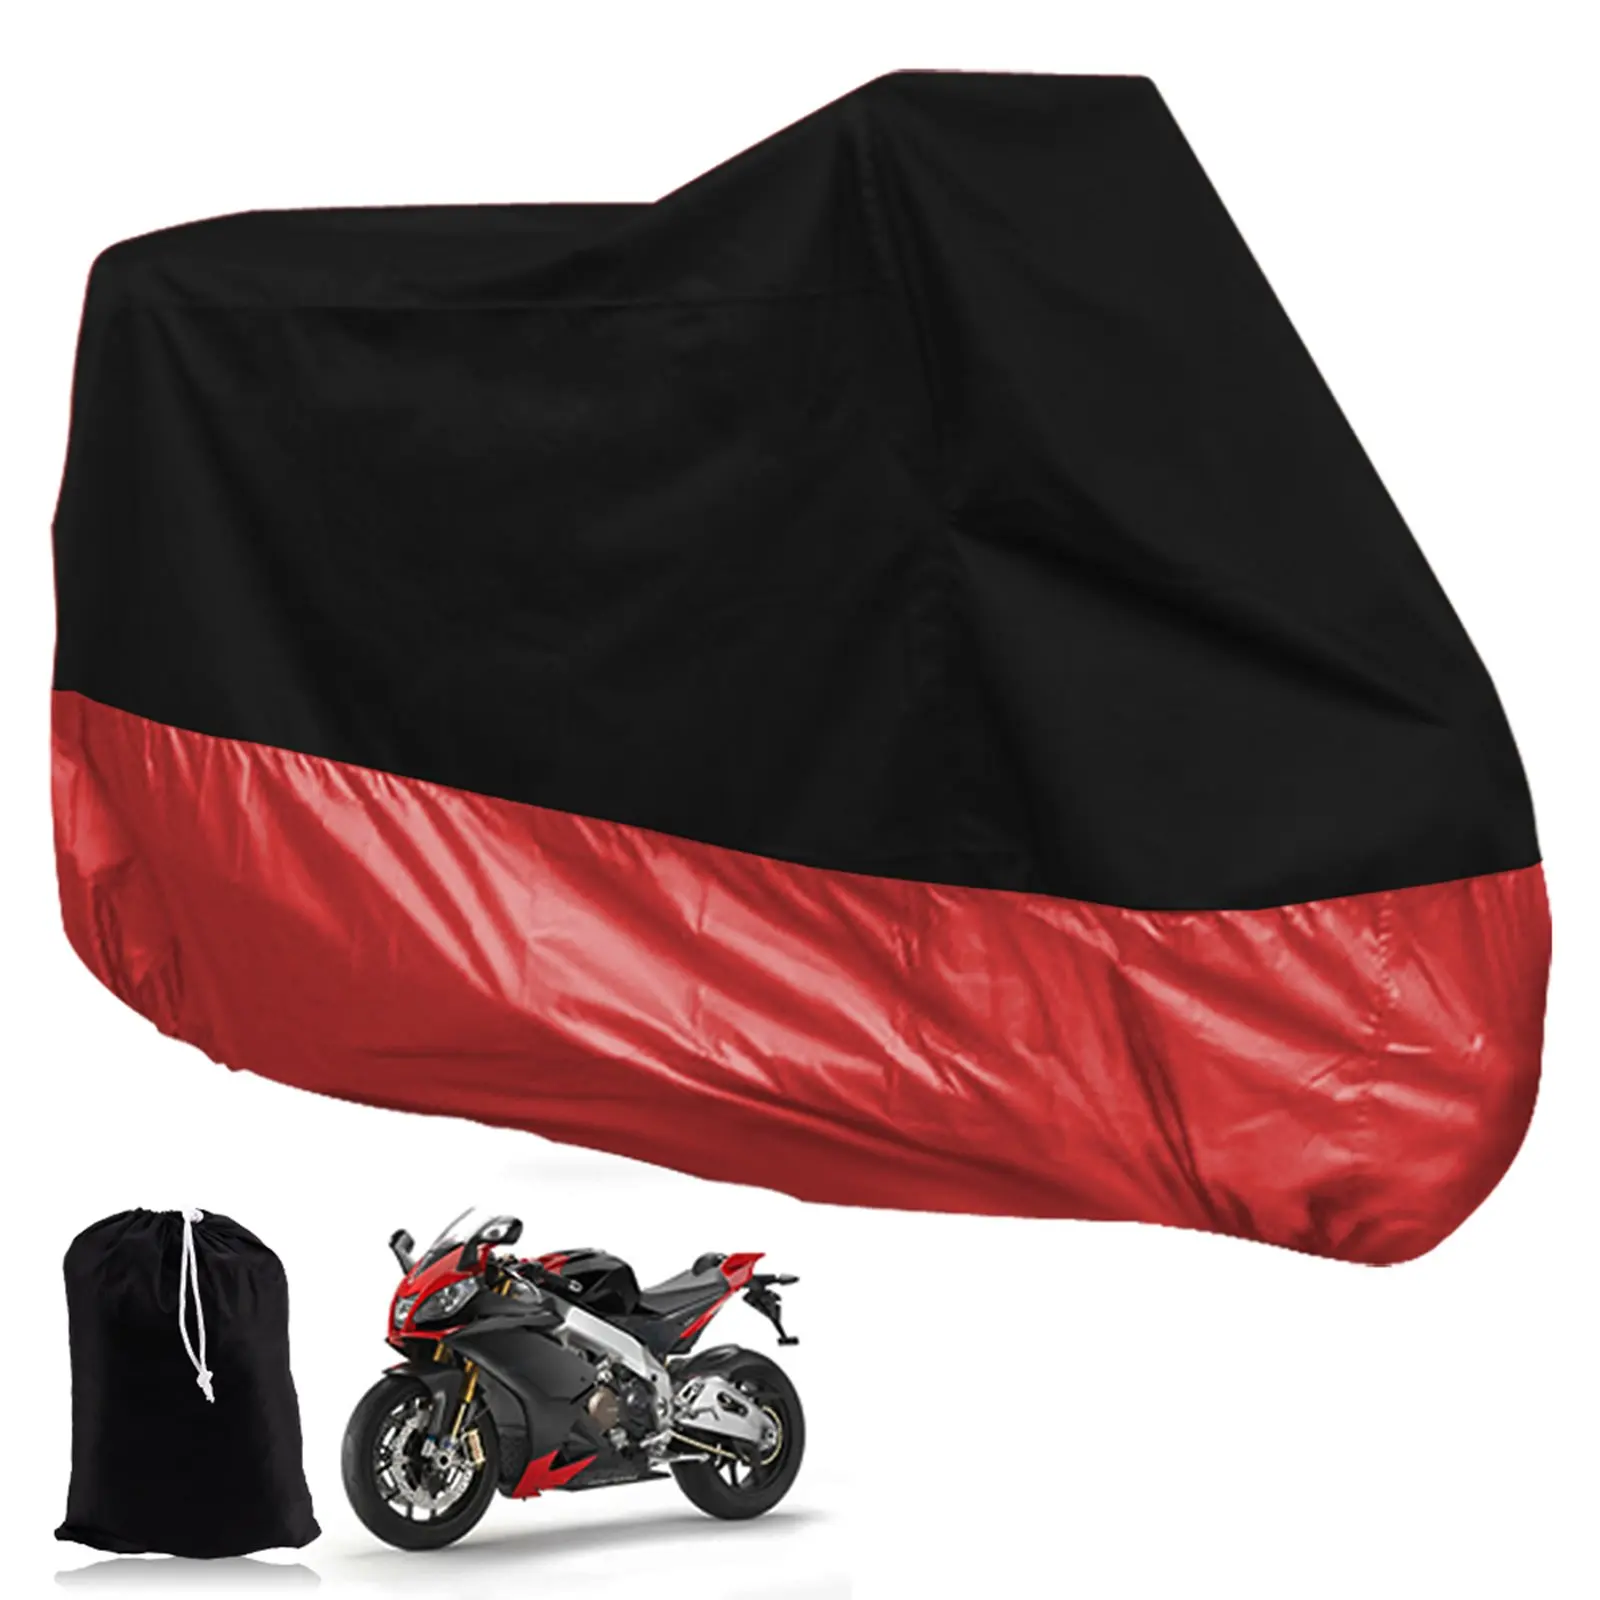 Брезентовая Крышка для мотоцикла, чехол для скутера, велосипеда, квадроцикла 245 см, размер XL, черный, красный, защита